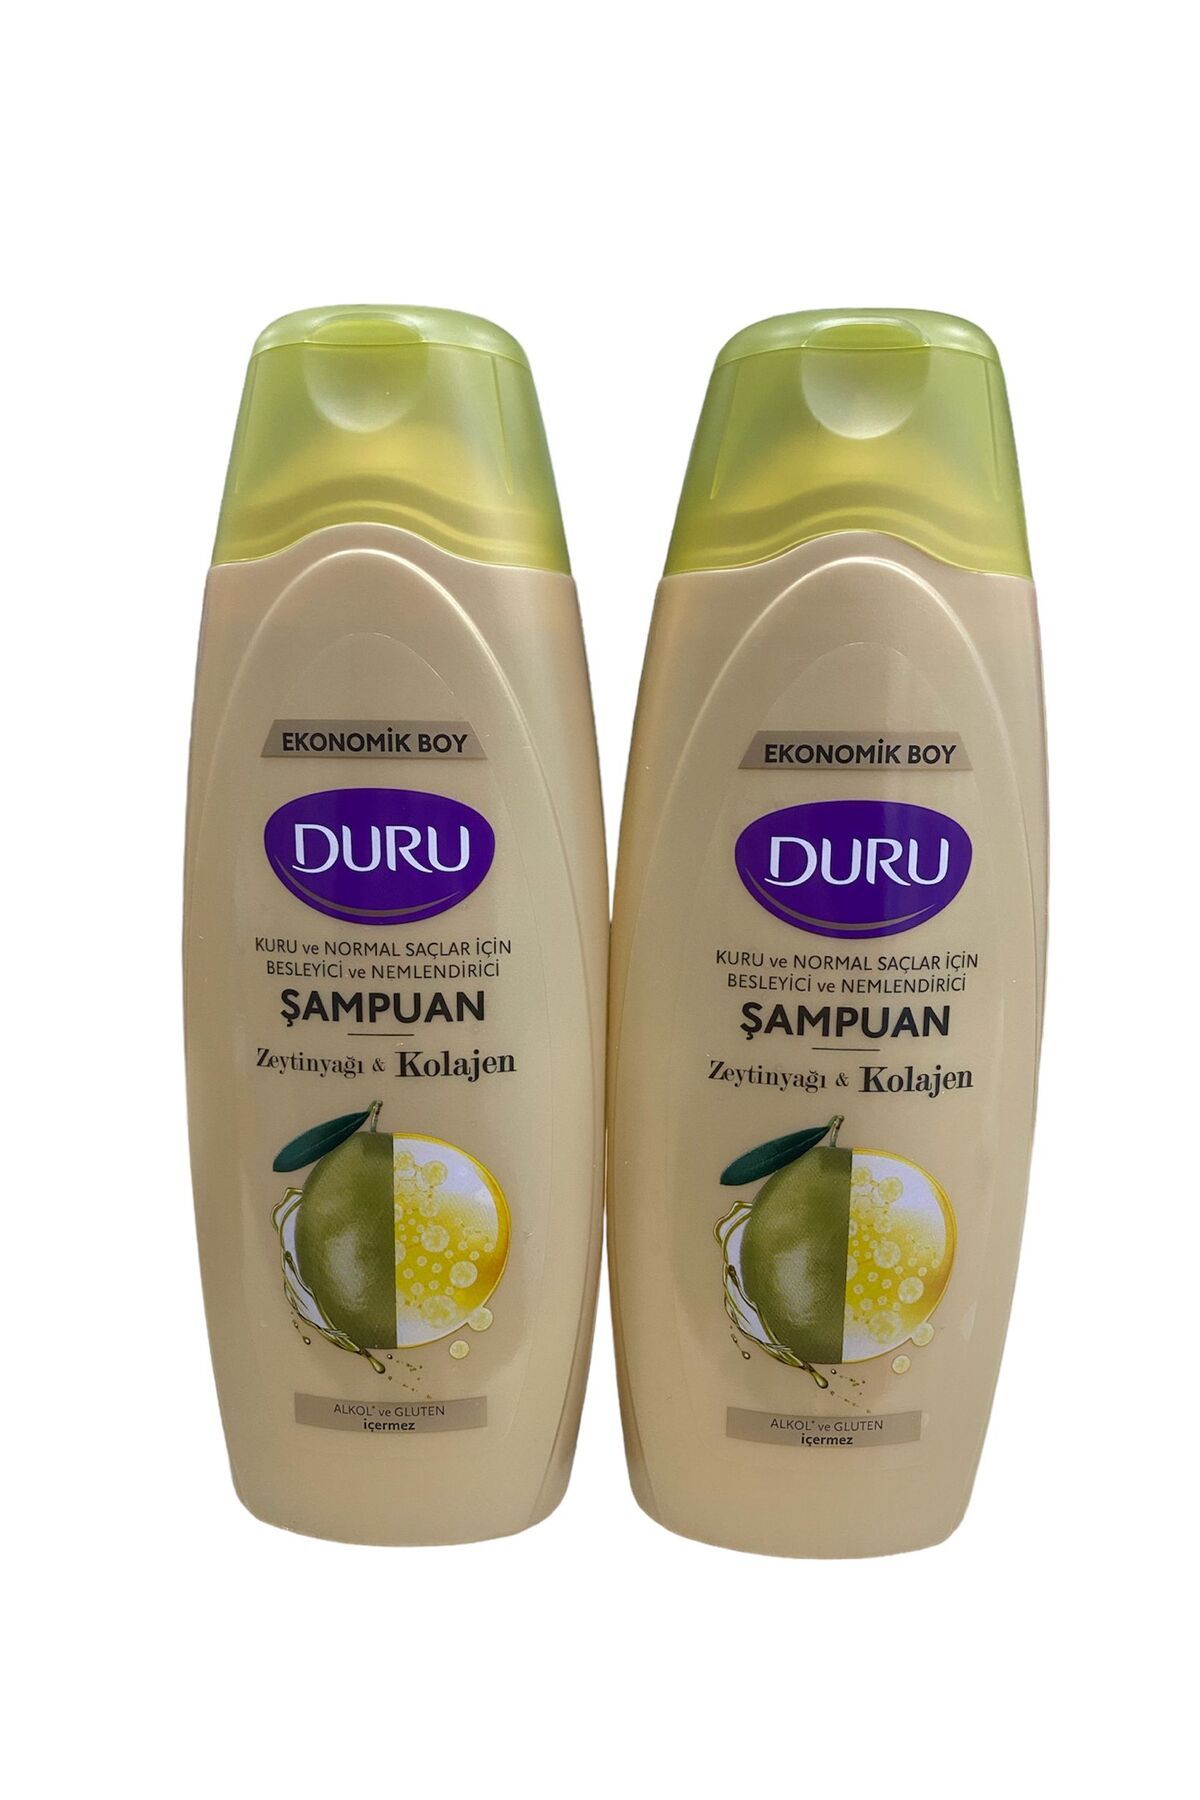 Duru zeytinyağı & kolagen şampuan seti sette 2 adet ürün mevcuttur ( 2 * 700 ml : 1400 ml )